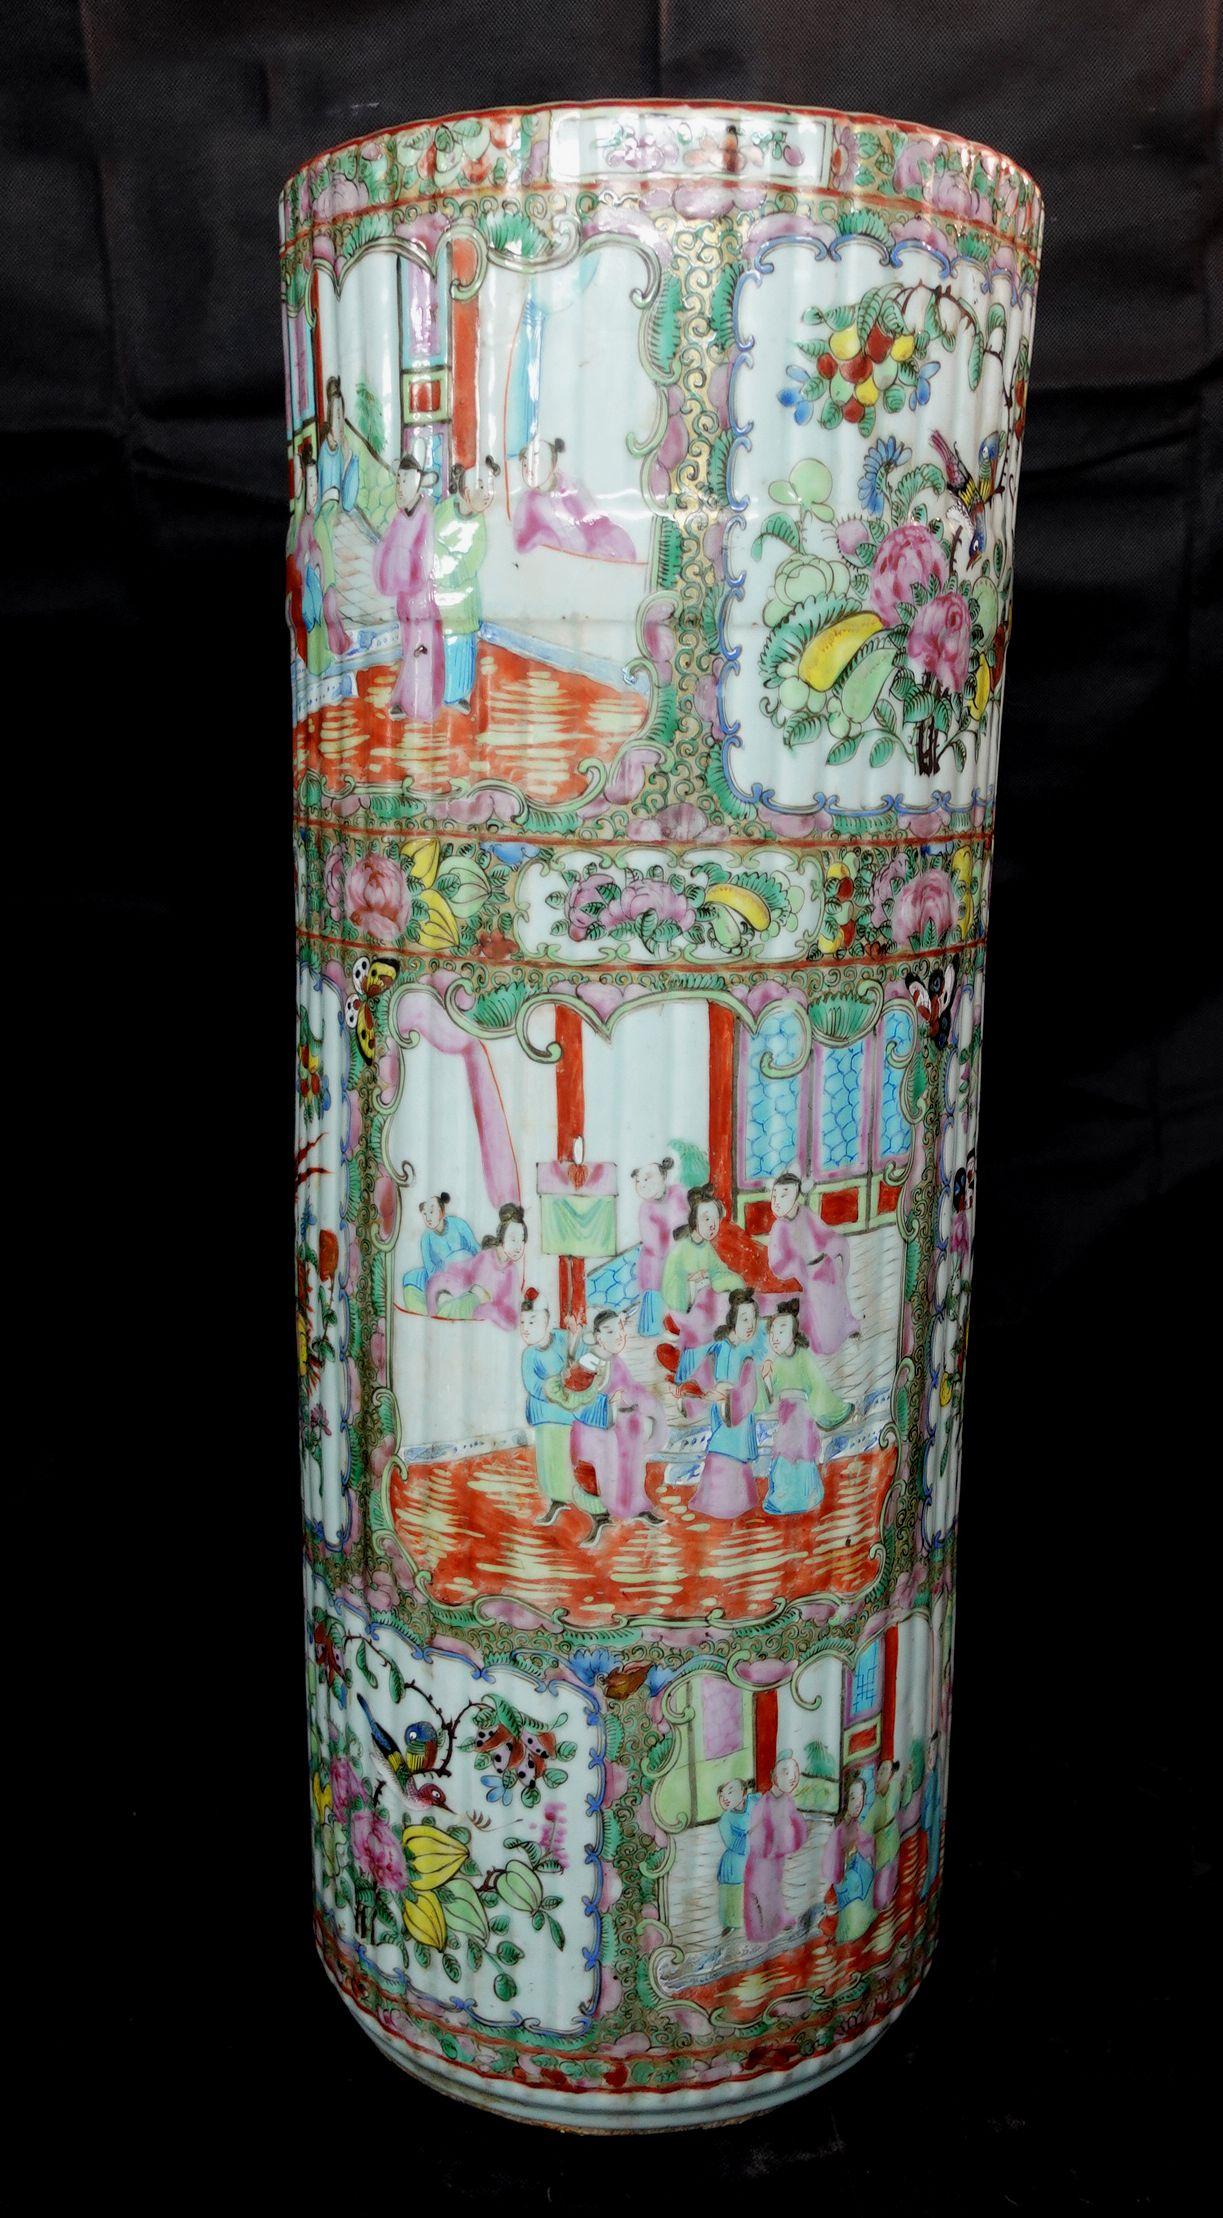 Ungewöhnlicher Rosenmedaillon-Export-Porzellanschirmständer, China, 19. Jahrhundert, mit gewellten Außenkanten,
Maße: Höhe 24, Durchmesser 9 Zoll.

 